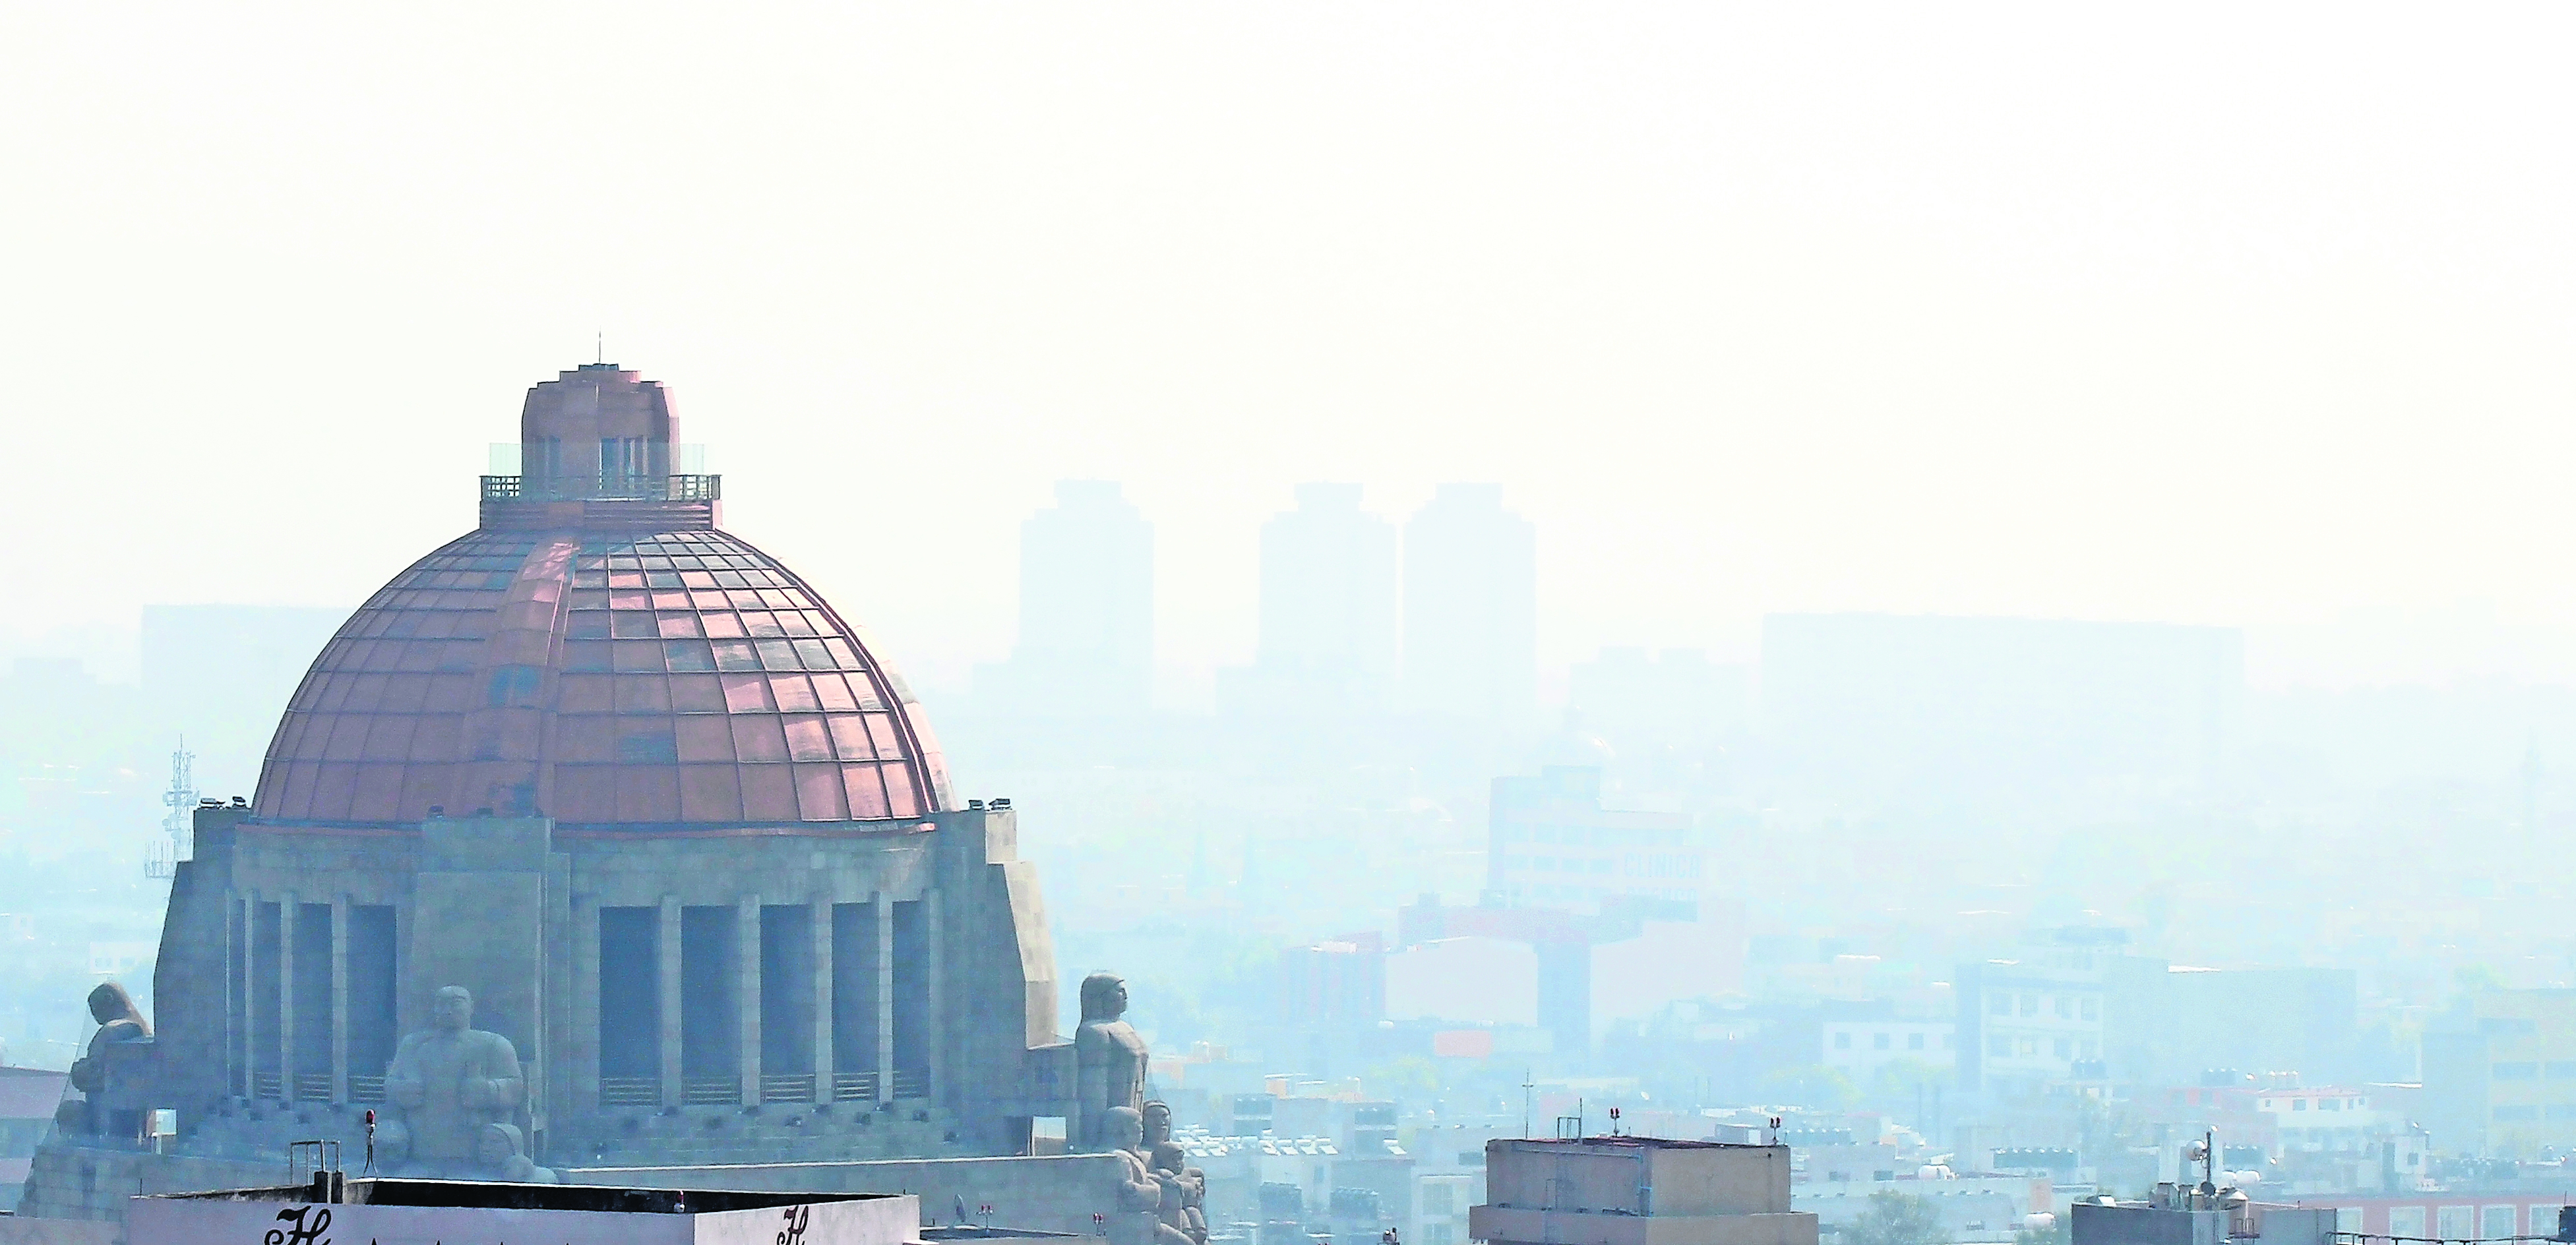 Por contaminación, mueren 57 mexicanos al día: experto